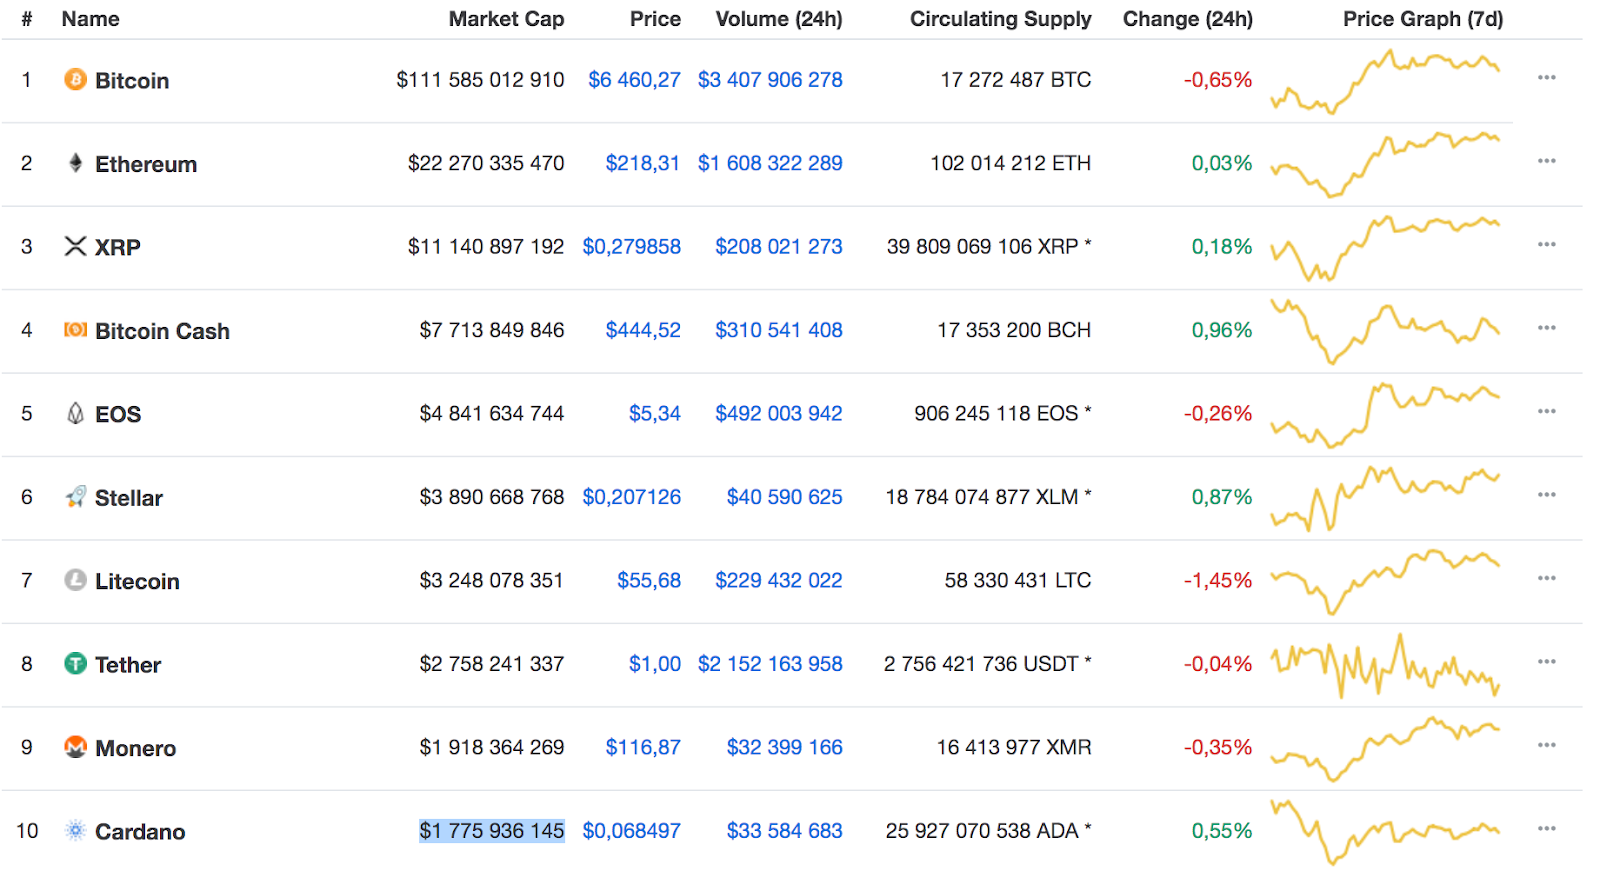 Top 10 cryptocurrencies now